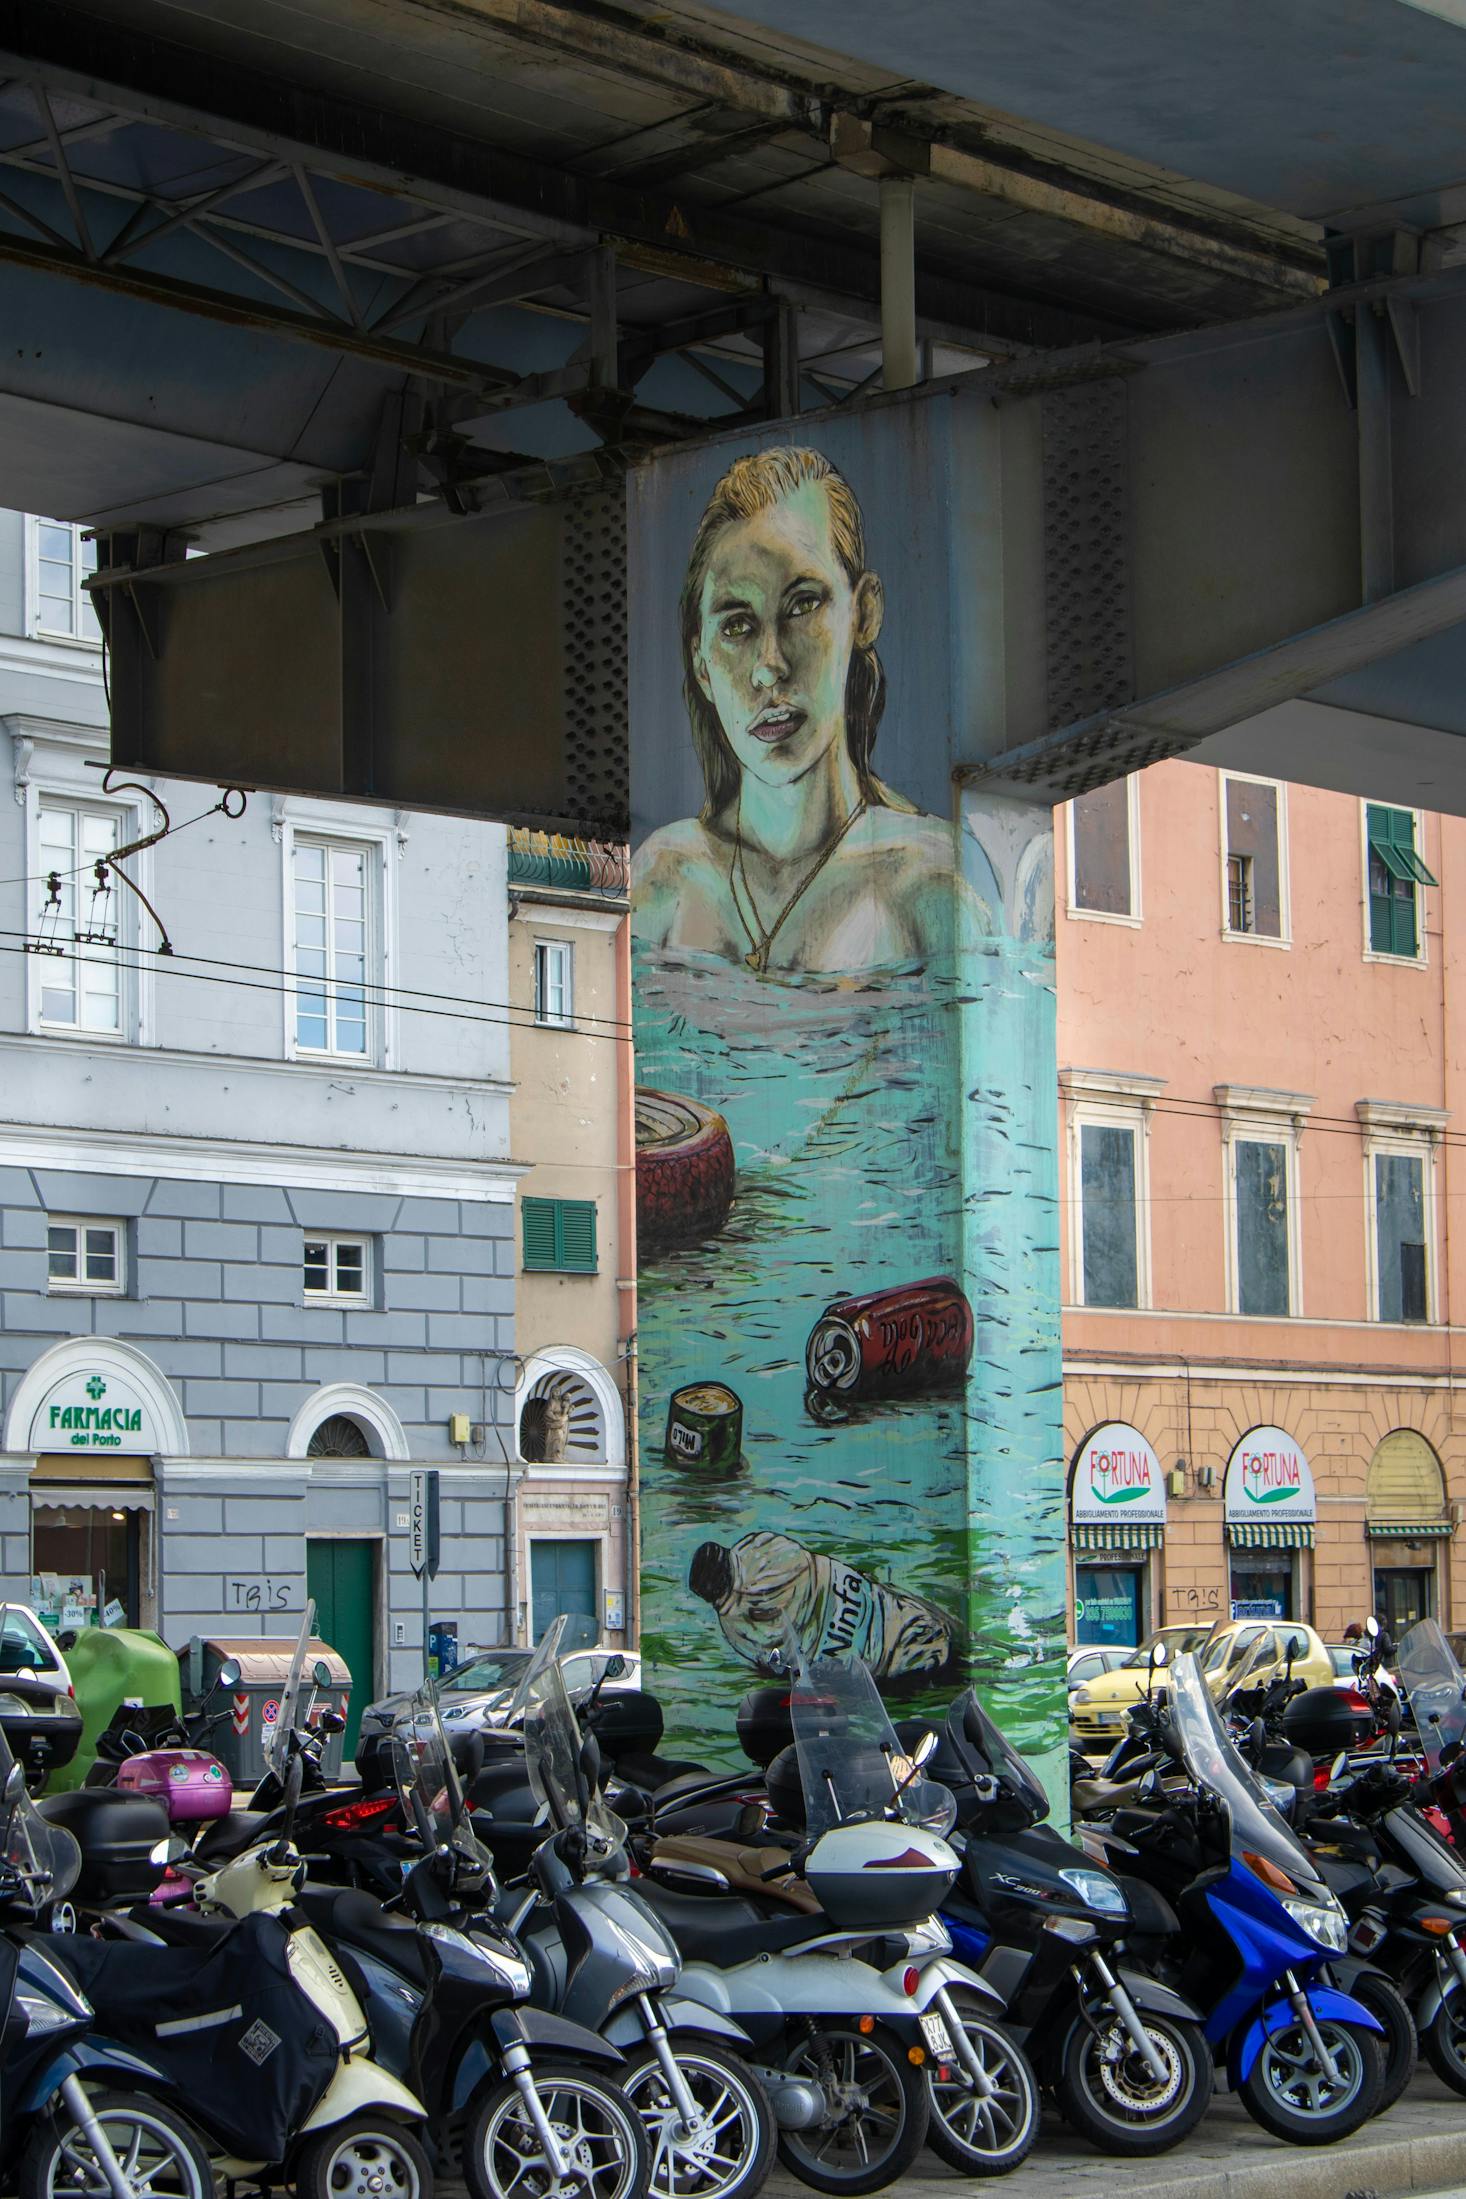 Street art in Genoa